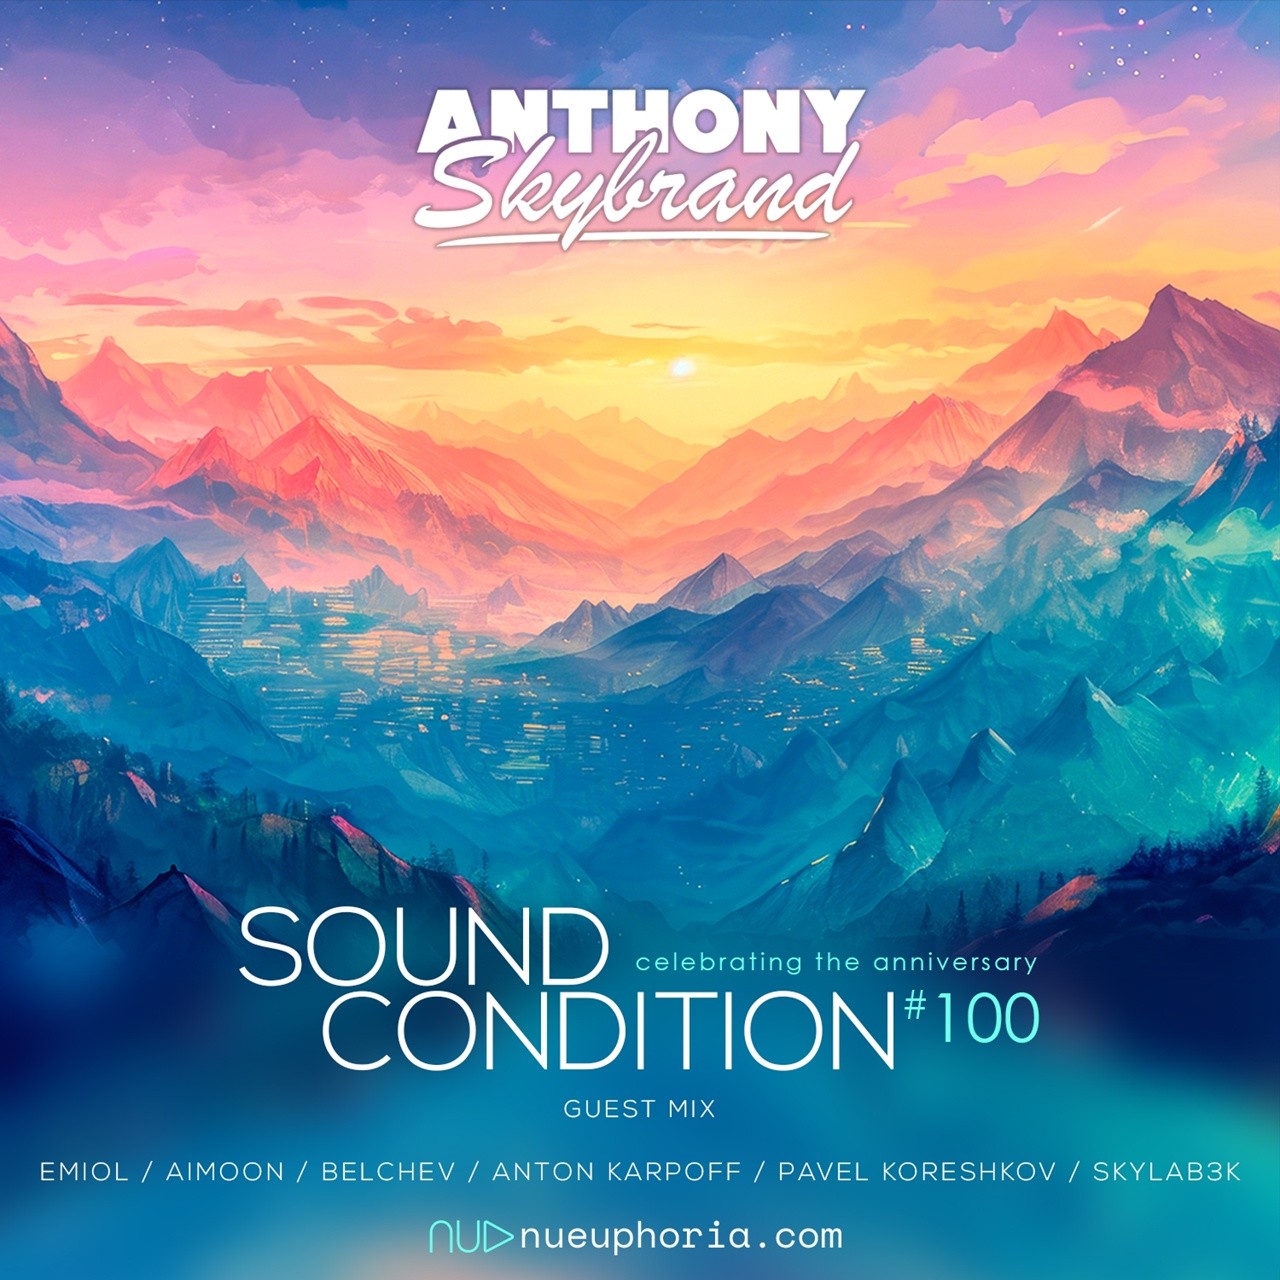 Skylab3k - Sound Condition (Guest Mix) #100 – Anthony Skybrand